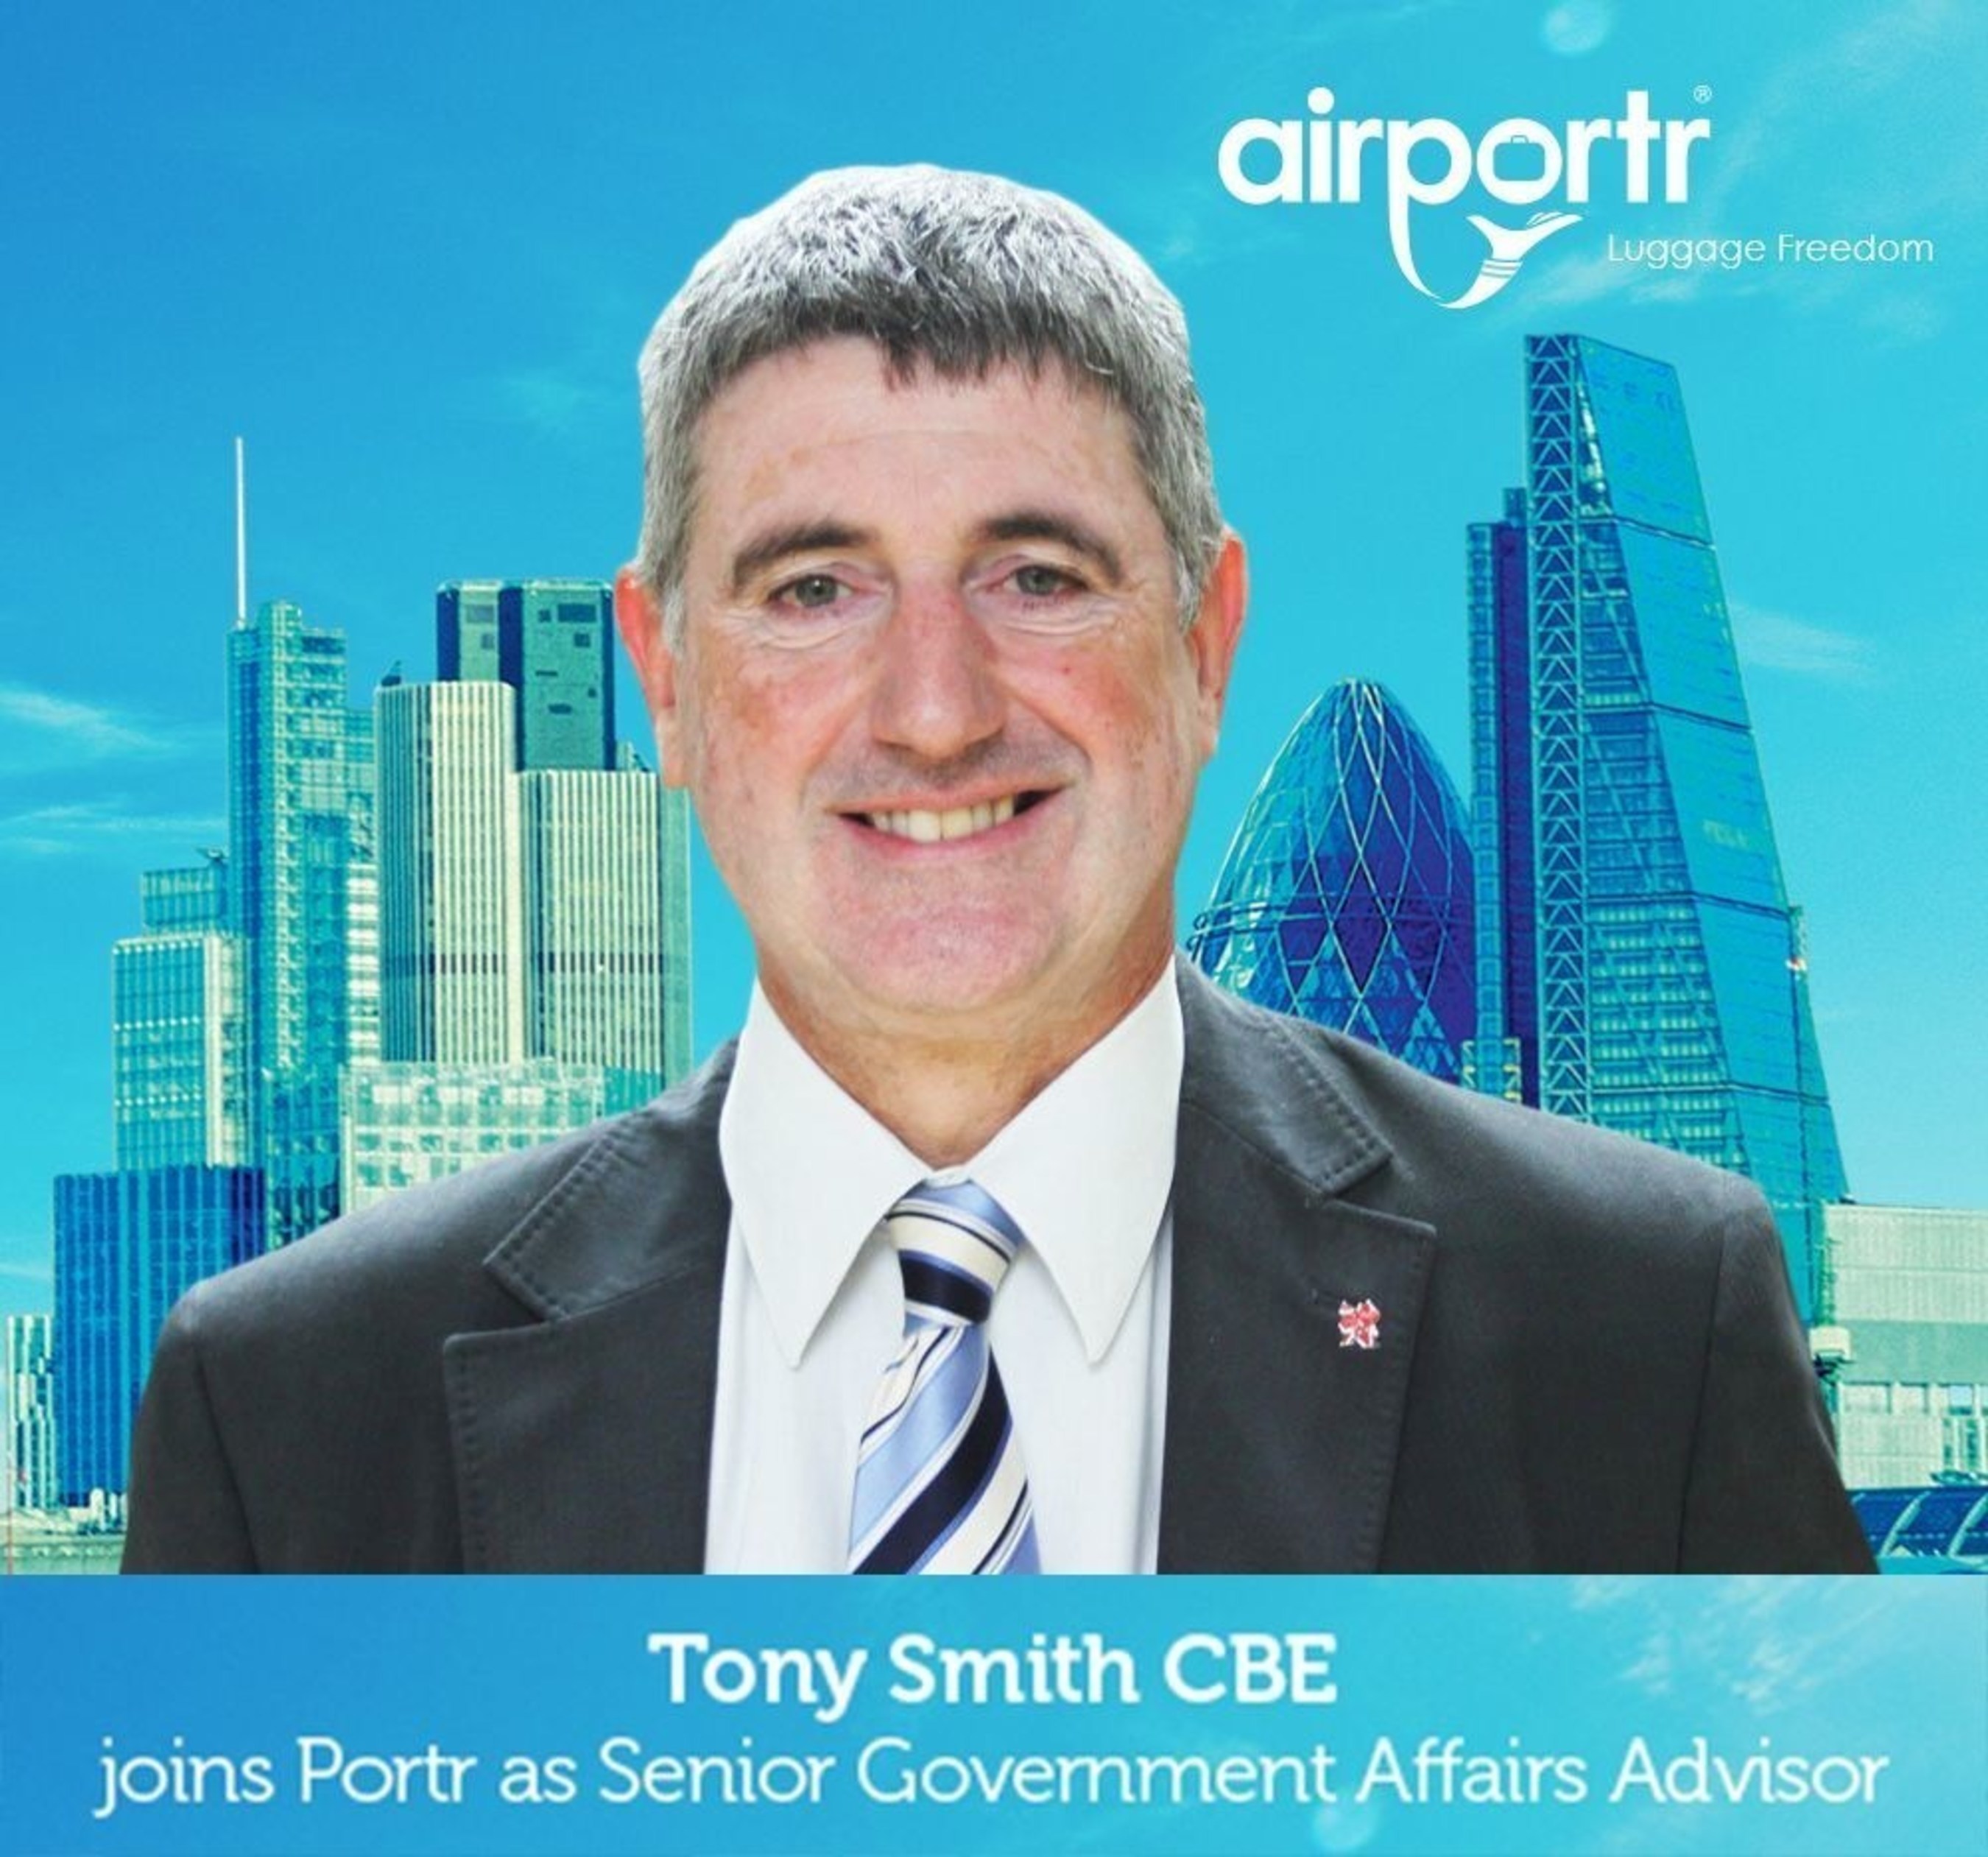 Tony Smith CBE joins Portr as Senior Government Affairs Advisor (PRNewsFoto/AirPortr)